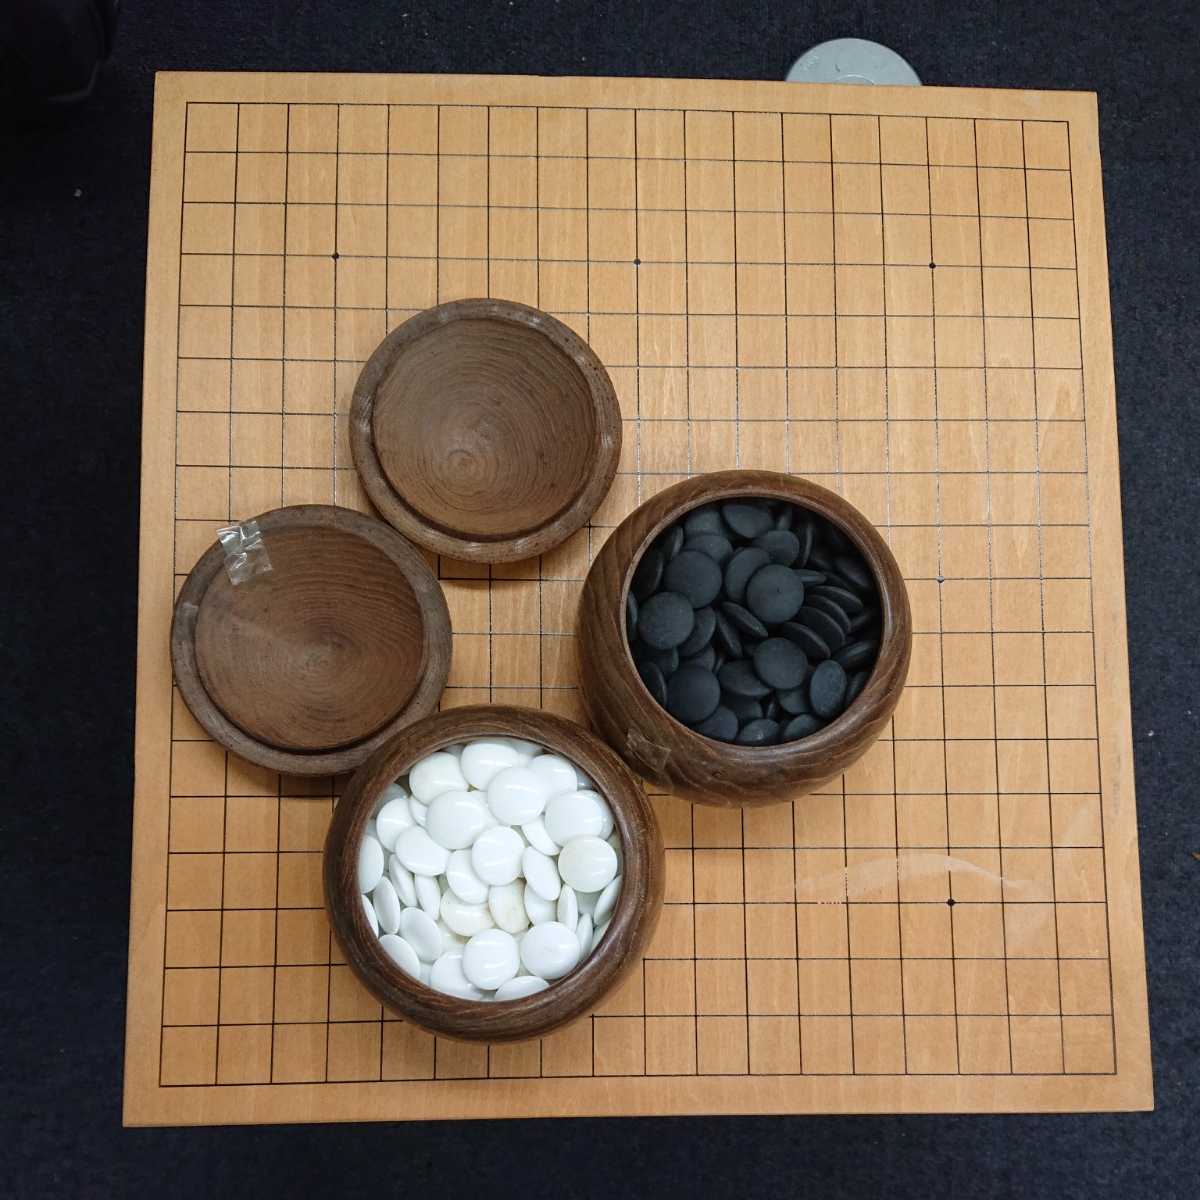 囲碁セット ゴム盤の碁盤 日本棋院取扱 とＰ碁笥 碁石普及セット 上品な